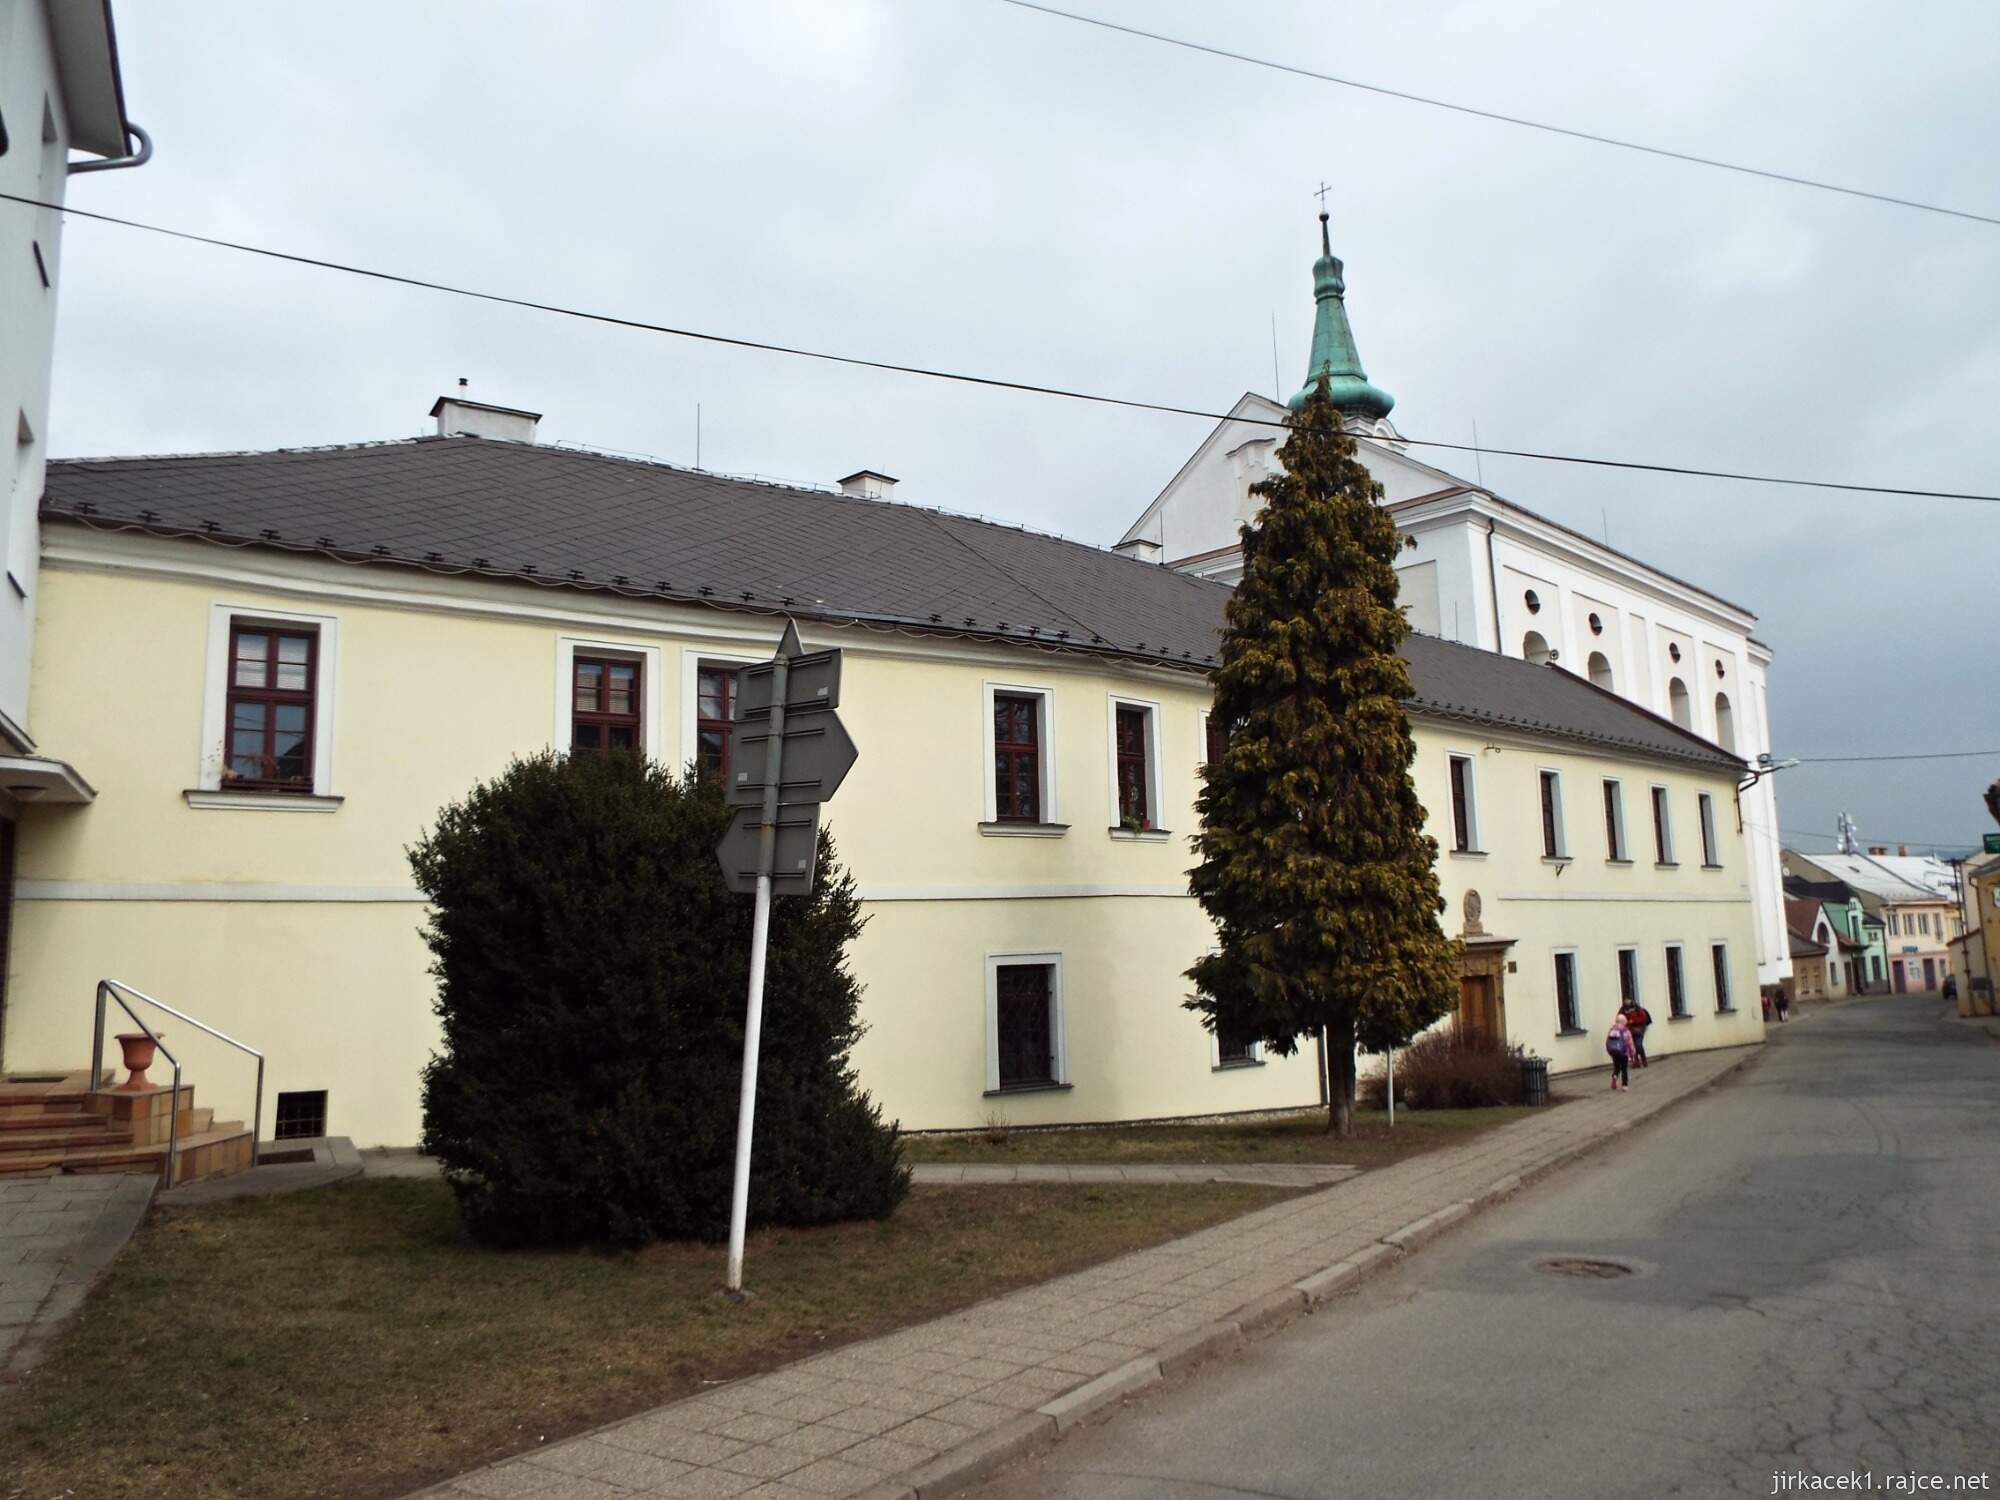 06 - Jevíčko - Kostel Nanebevzetí Panny Marie s klášterem Augustiánů 17